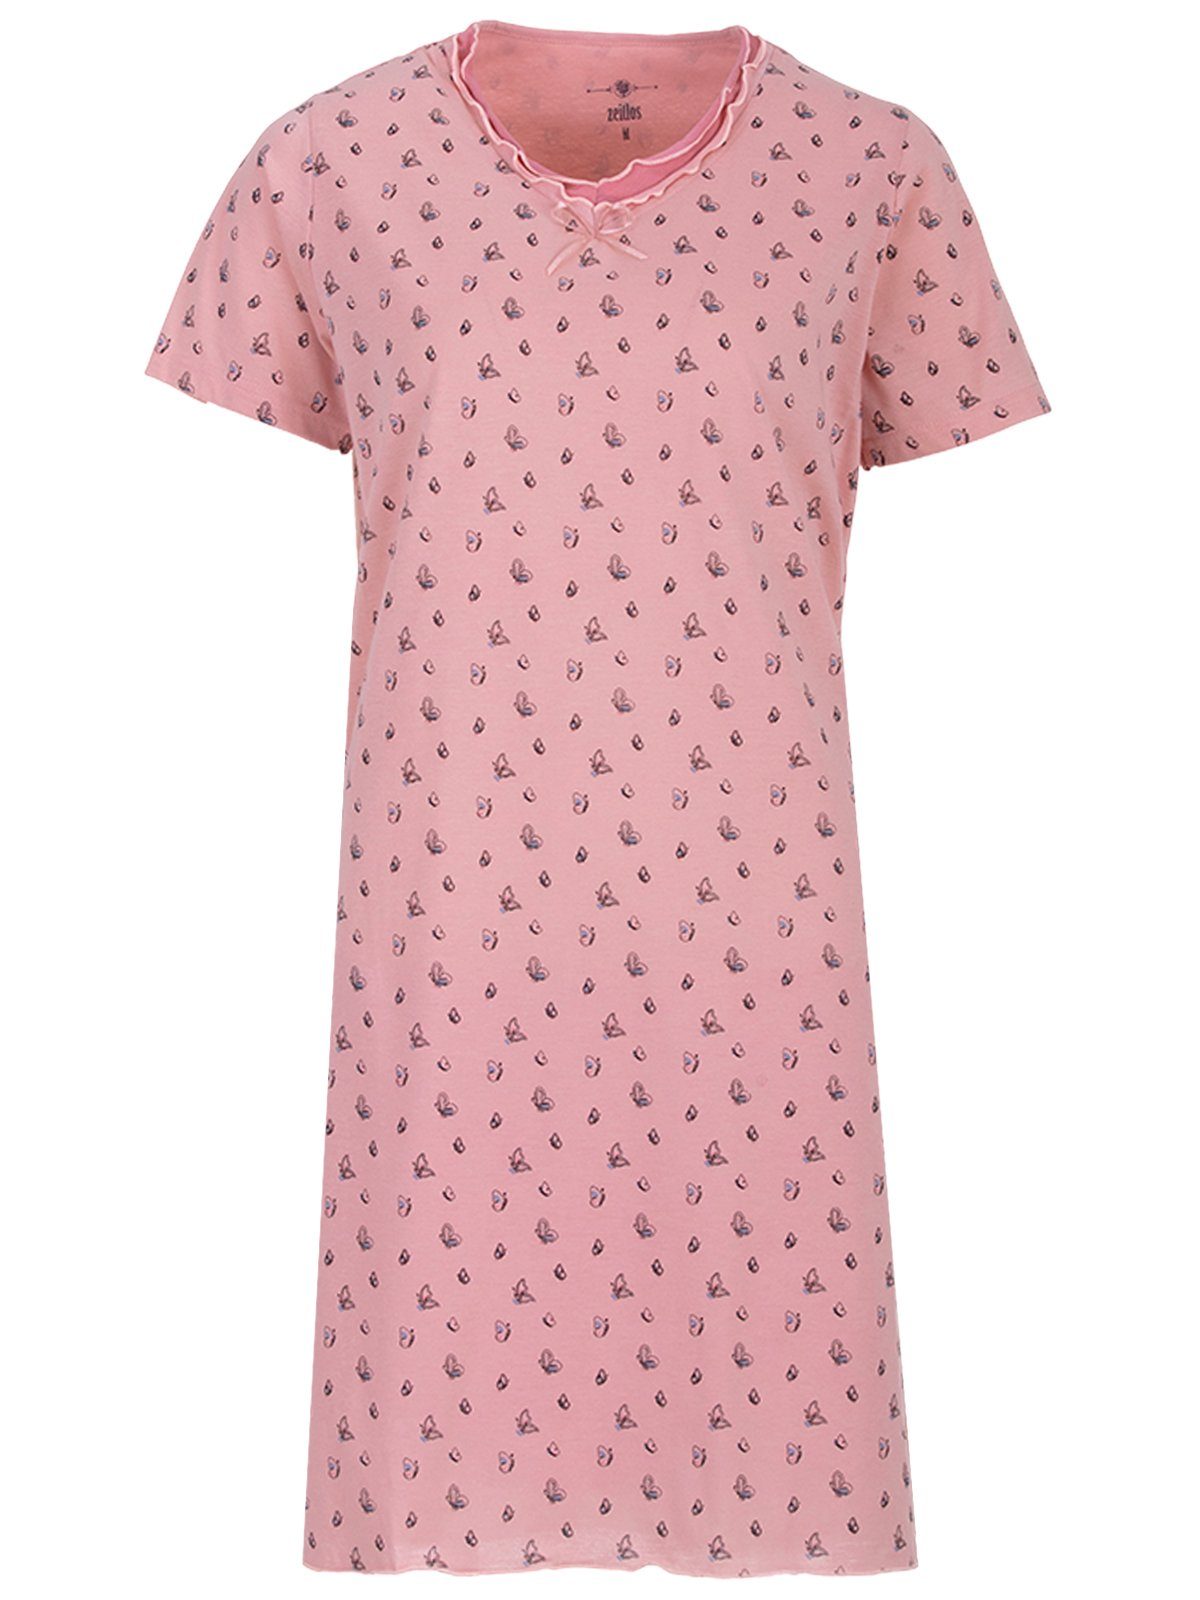 zeitlos Nachthemd Nachthemd rosa - Kurzarm Schmetterling